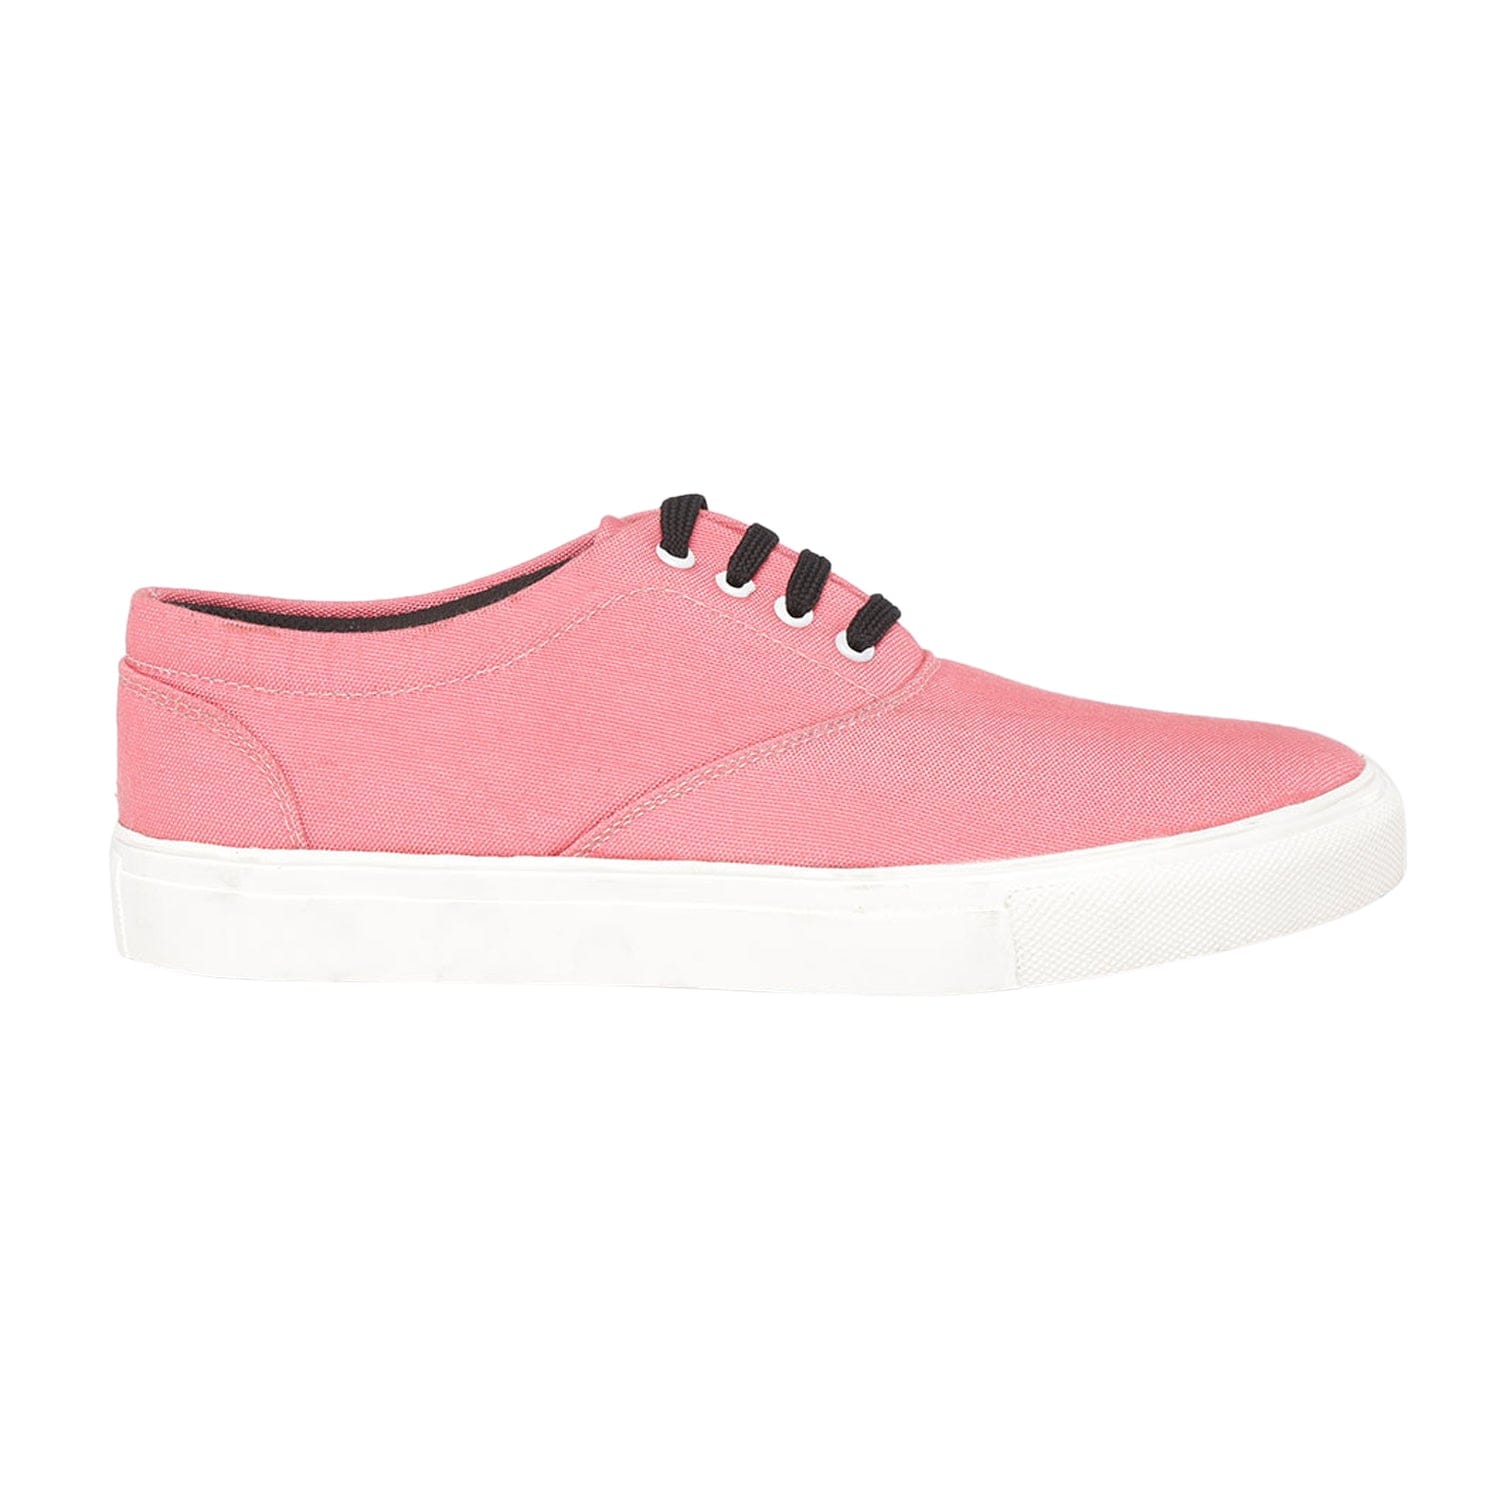 Funkfeets Unisex Pink Sneakers